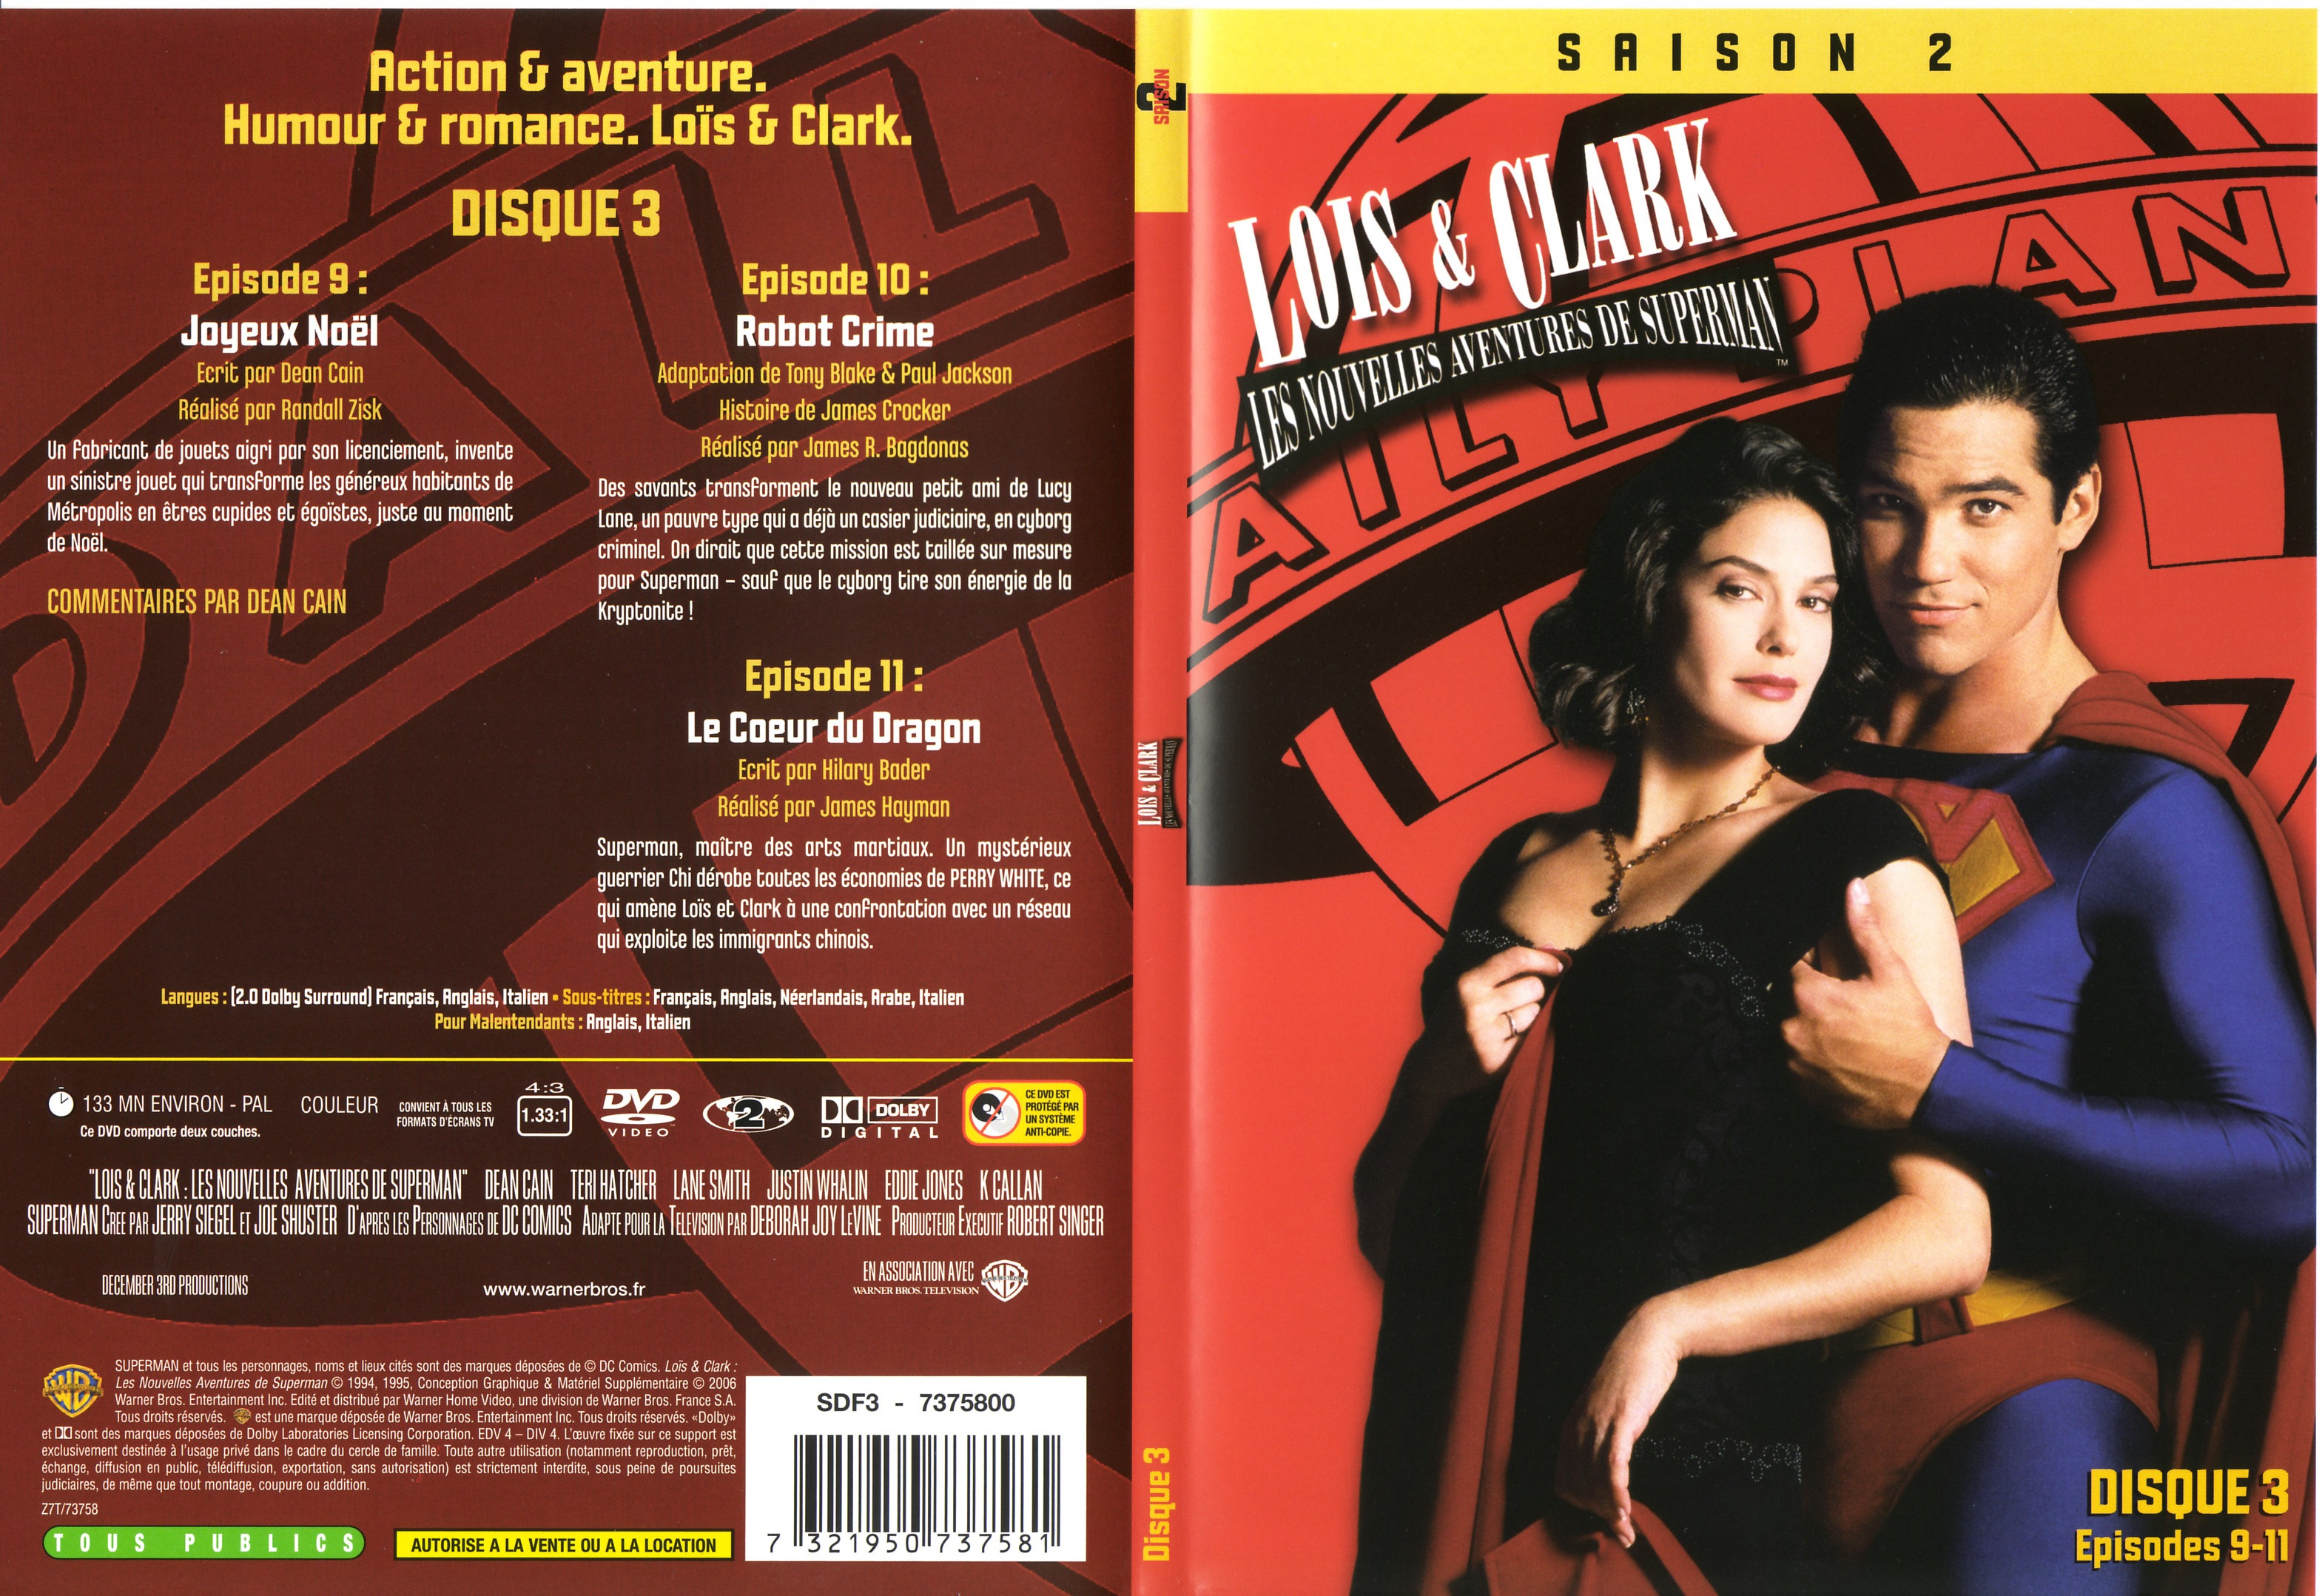 Jaquette DVD Lois et Clark Saison 2 vol 3